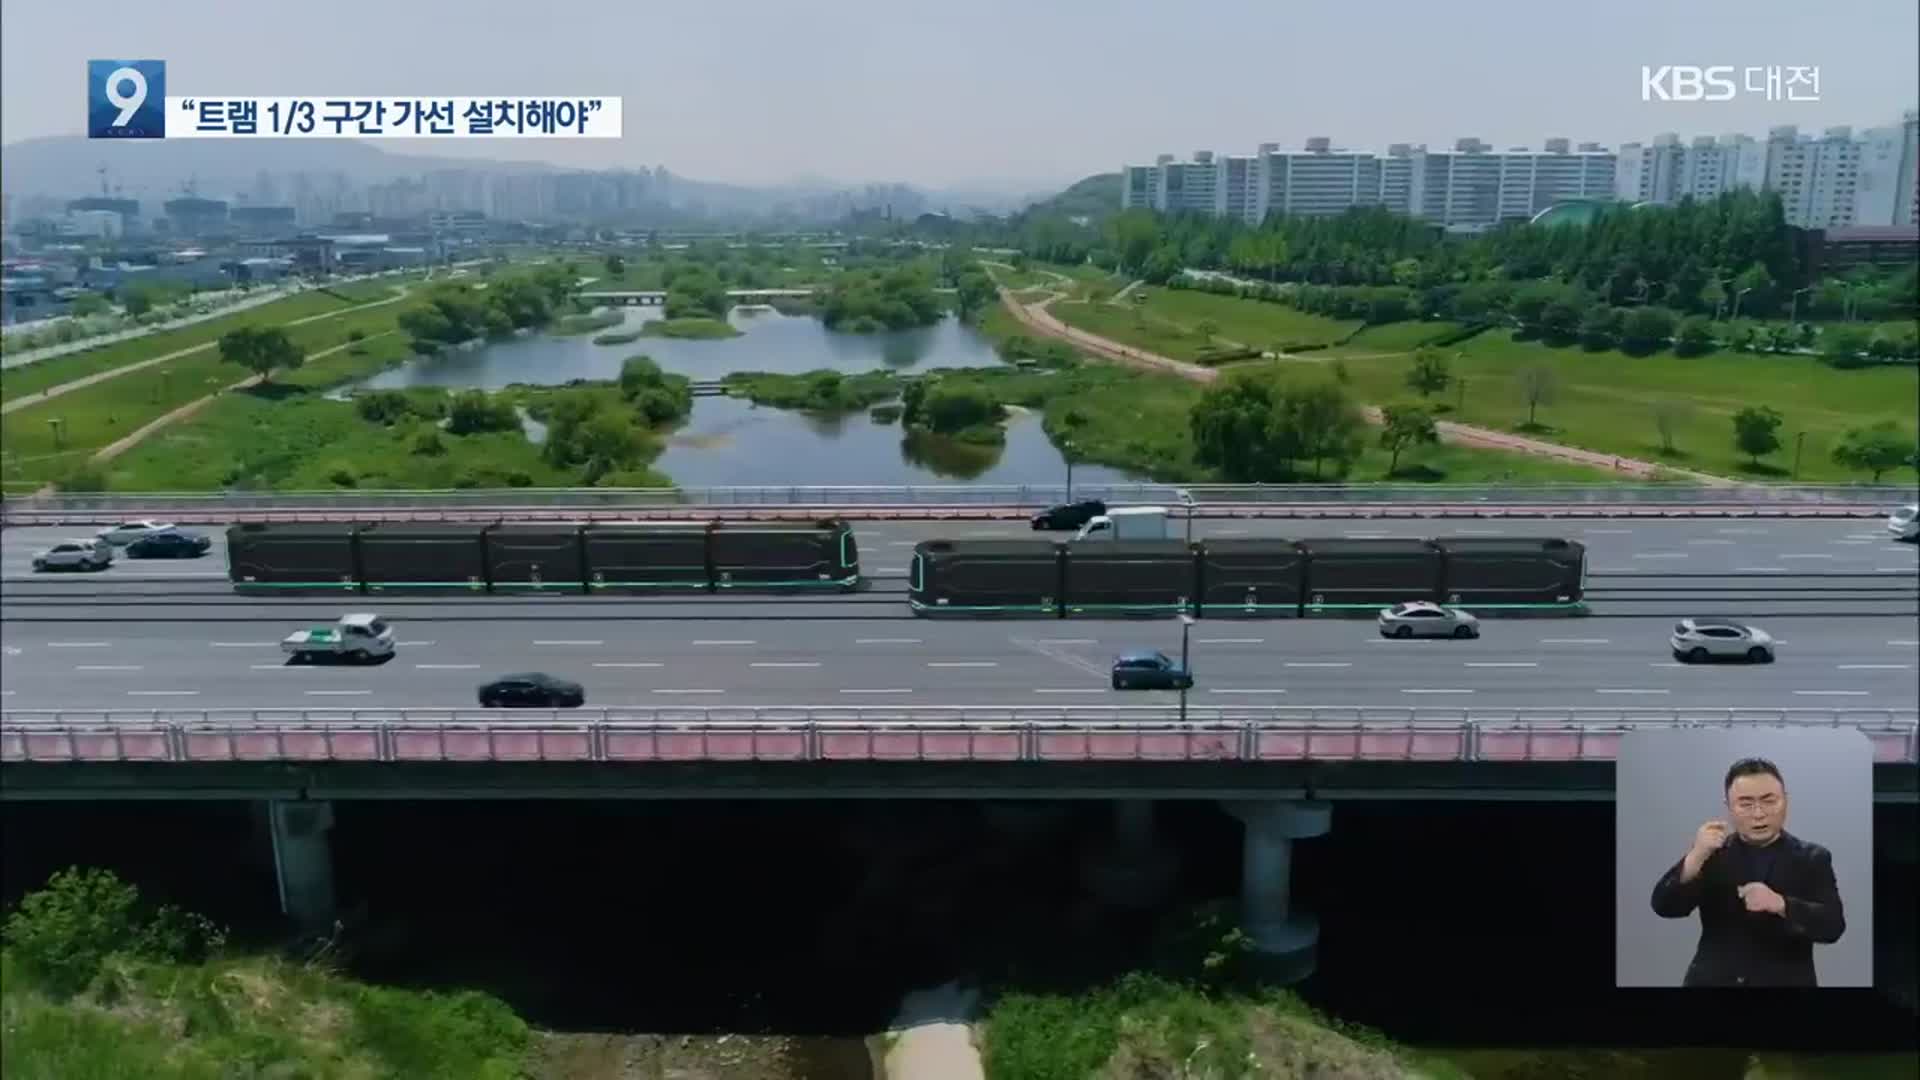 대전시 “트램 1/3 구간 가선 설치”…뒷북 행정 비판